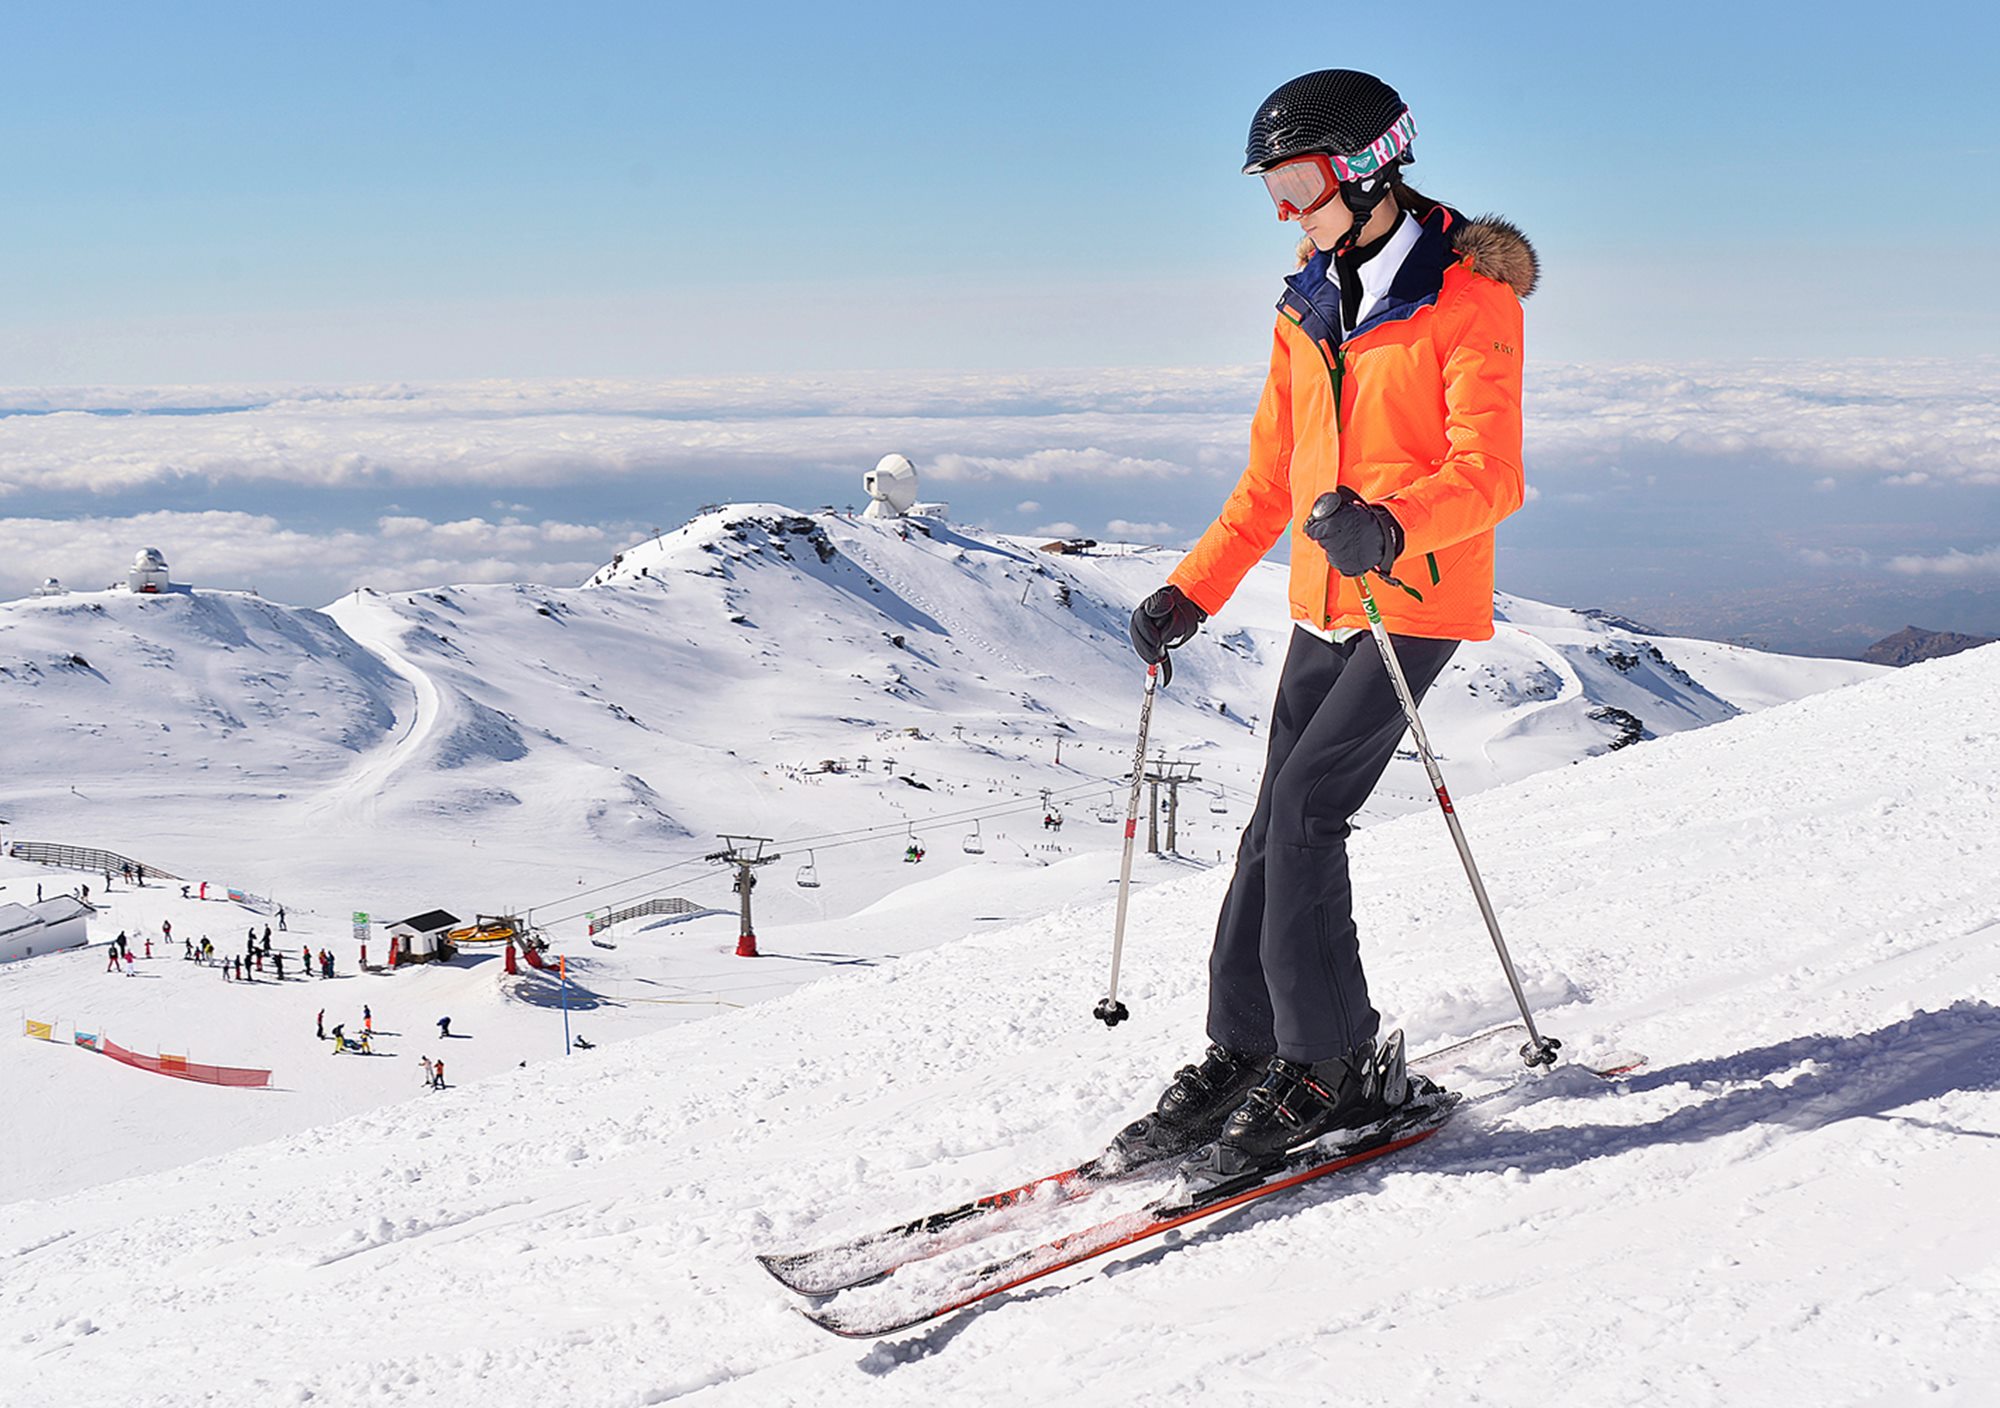 reservar un dia de nieve ski snow board Esquí en Sierra Nevada desde Granada con transporte traslado y equipamiento material